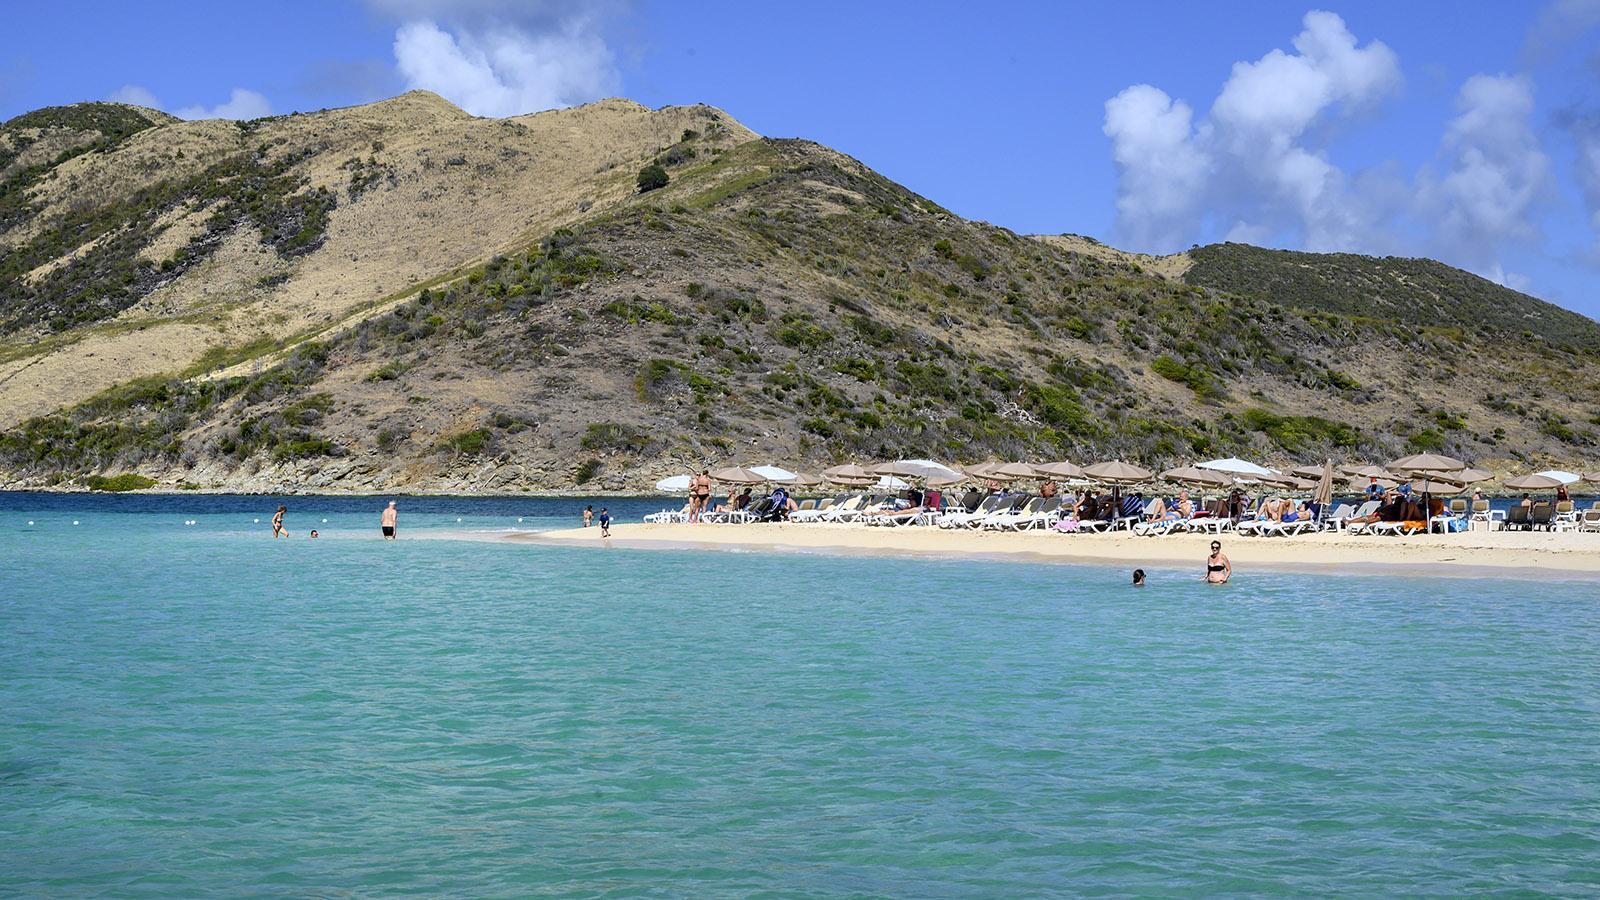 Karibiktraum: das Inselchen Pinel mit der Strandbar Karibuni. Foto: Hilke Maunder